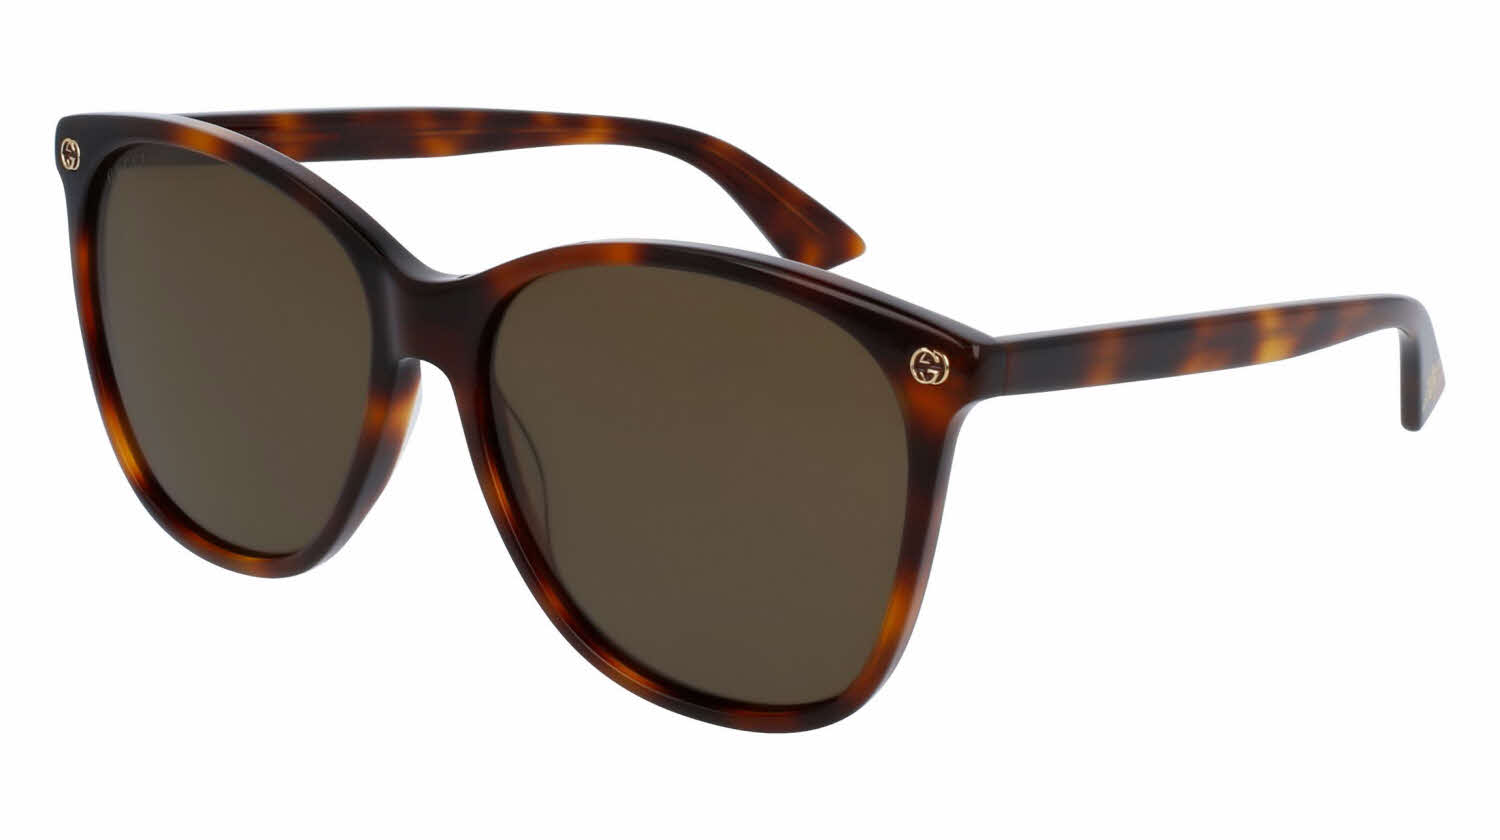 GG0024S Sunglasses FramesDirect.com